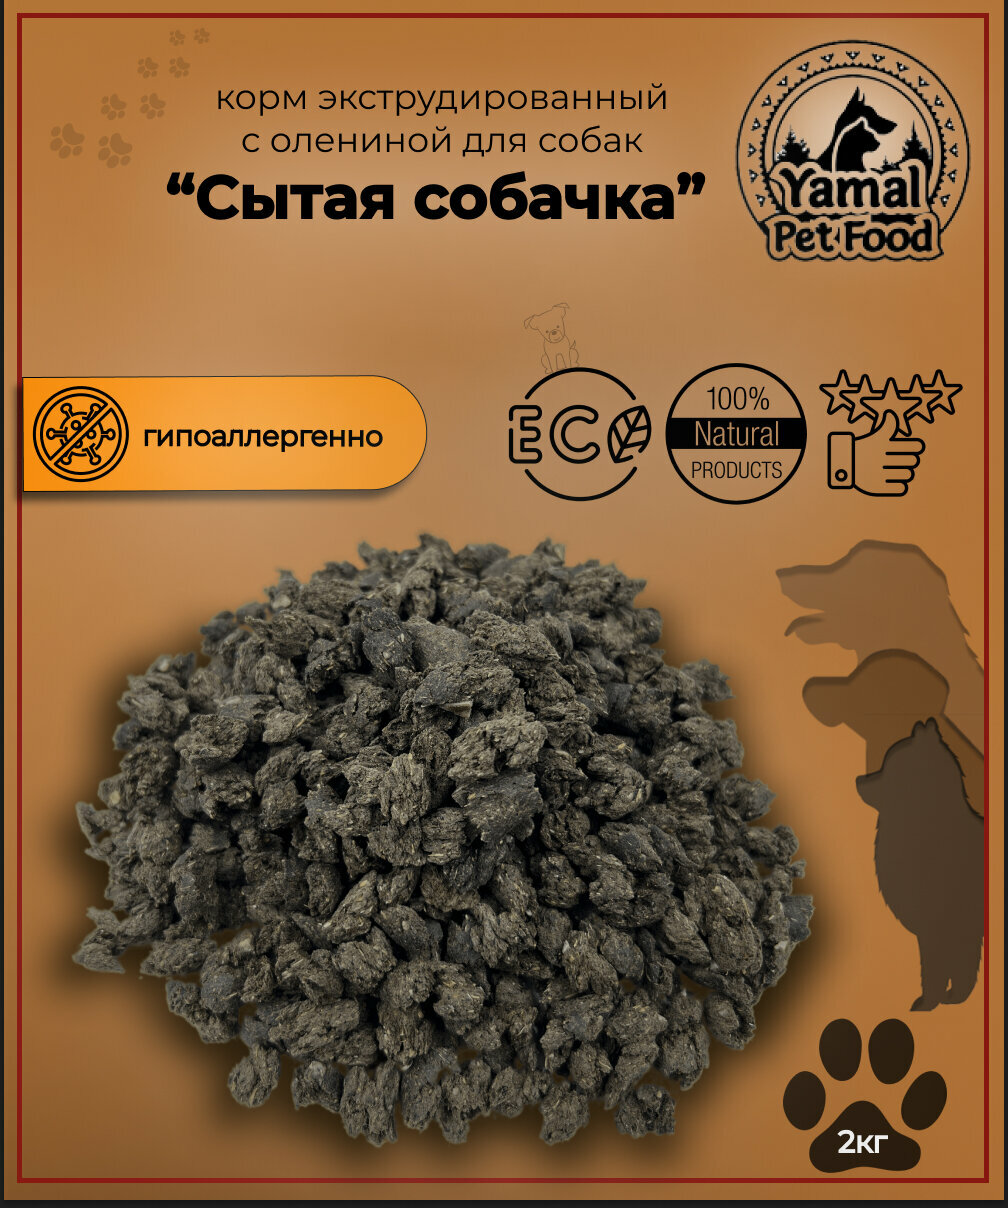 Корм с олениной экструдированный для собак "Сытая собачка" 2 кг.